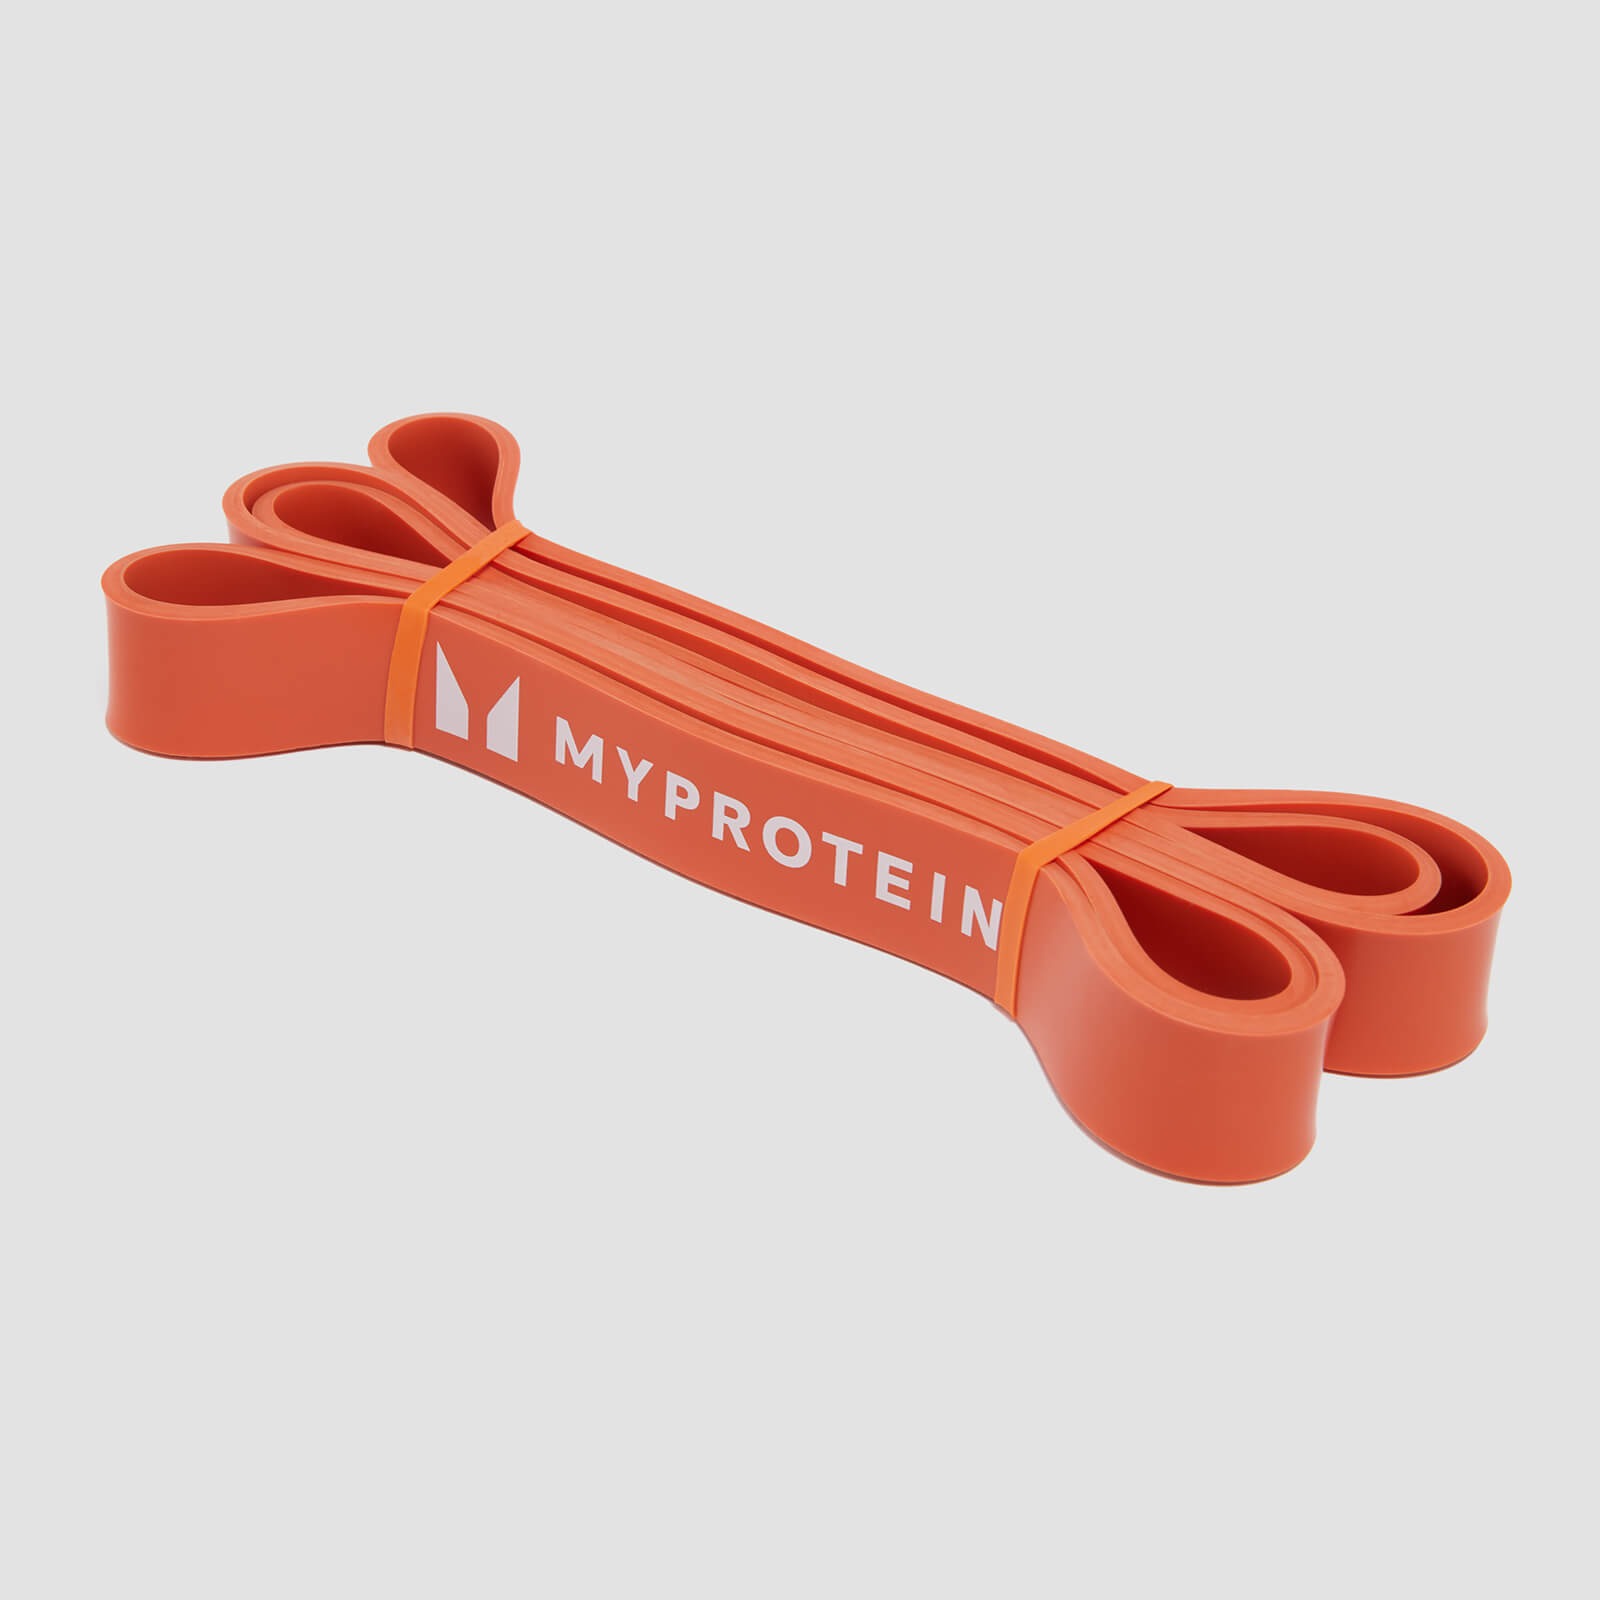 Bande de résistance Myprotein – Bande unique (11-36 kg) – Orange brûlé